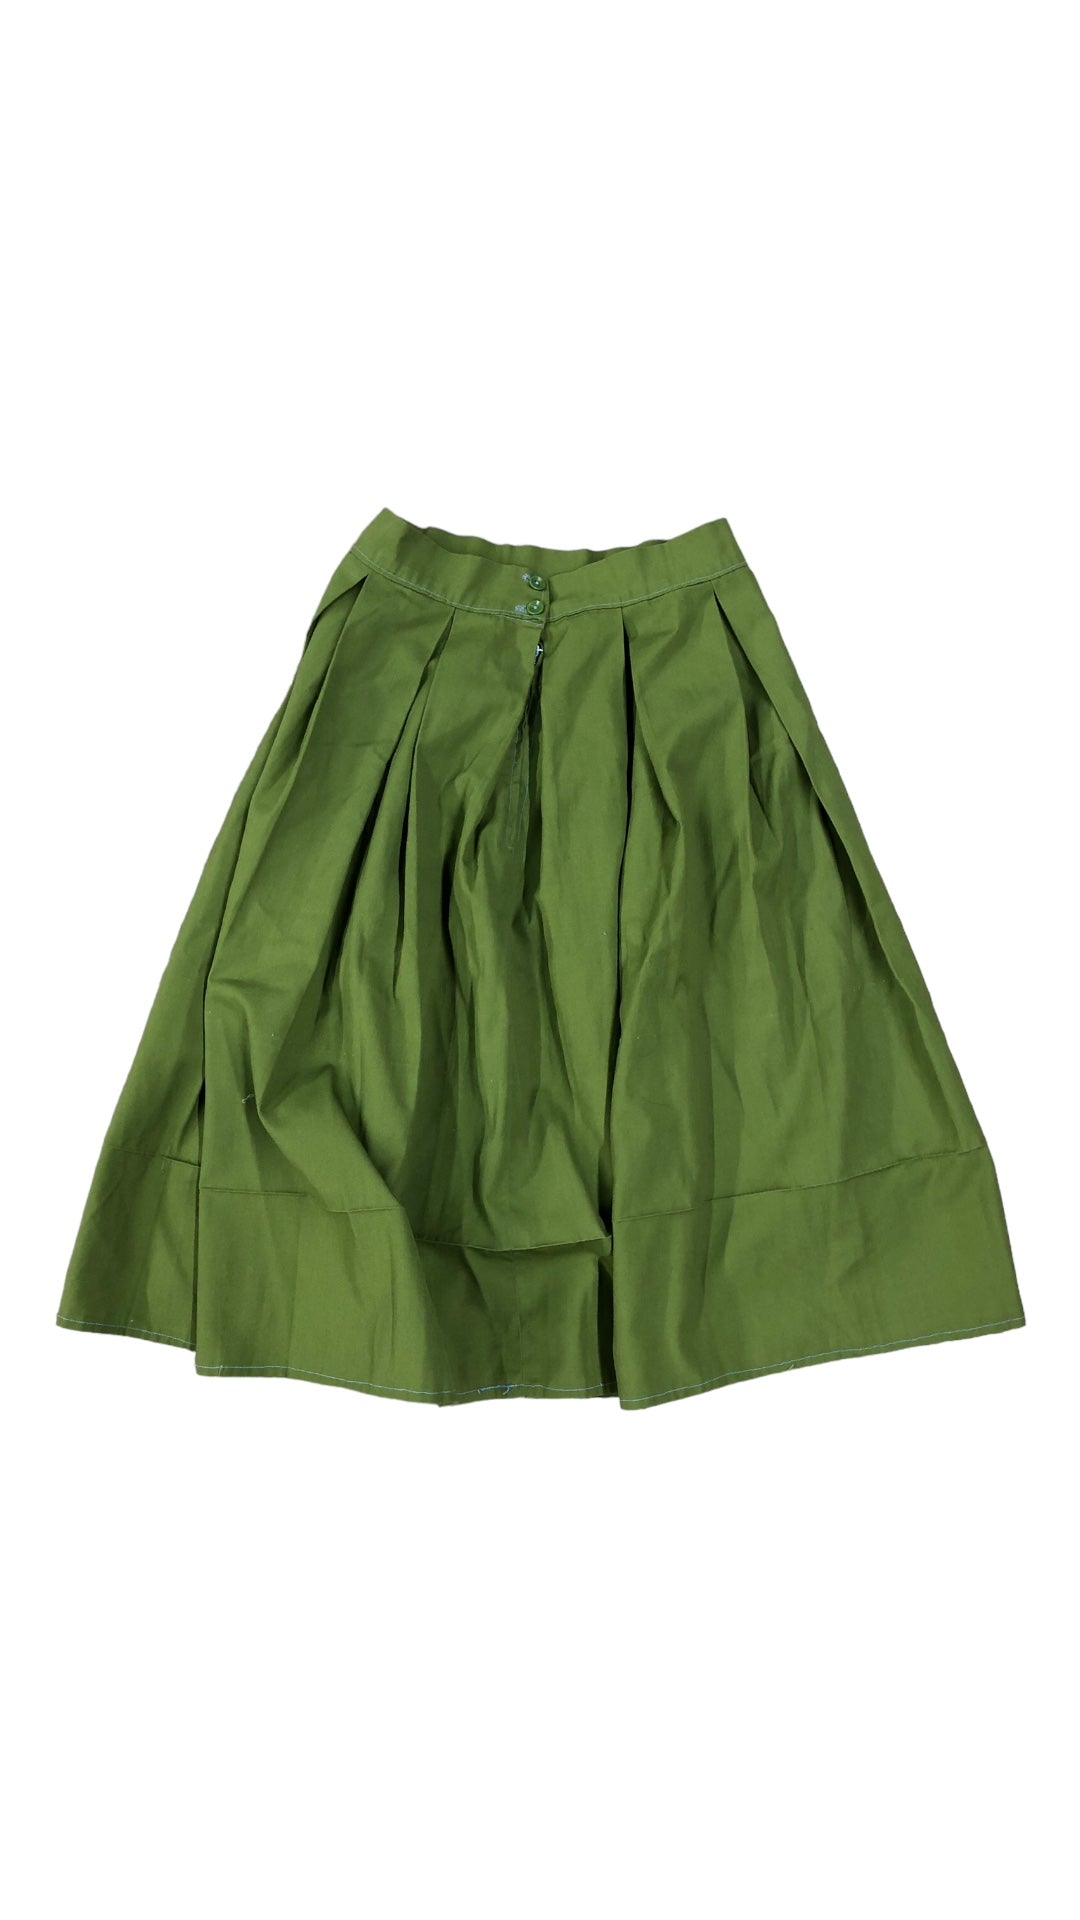 VTG Green Skirt Sz 27